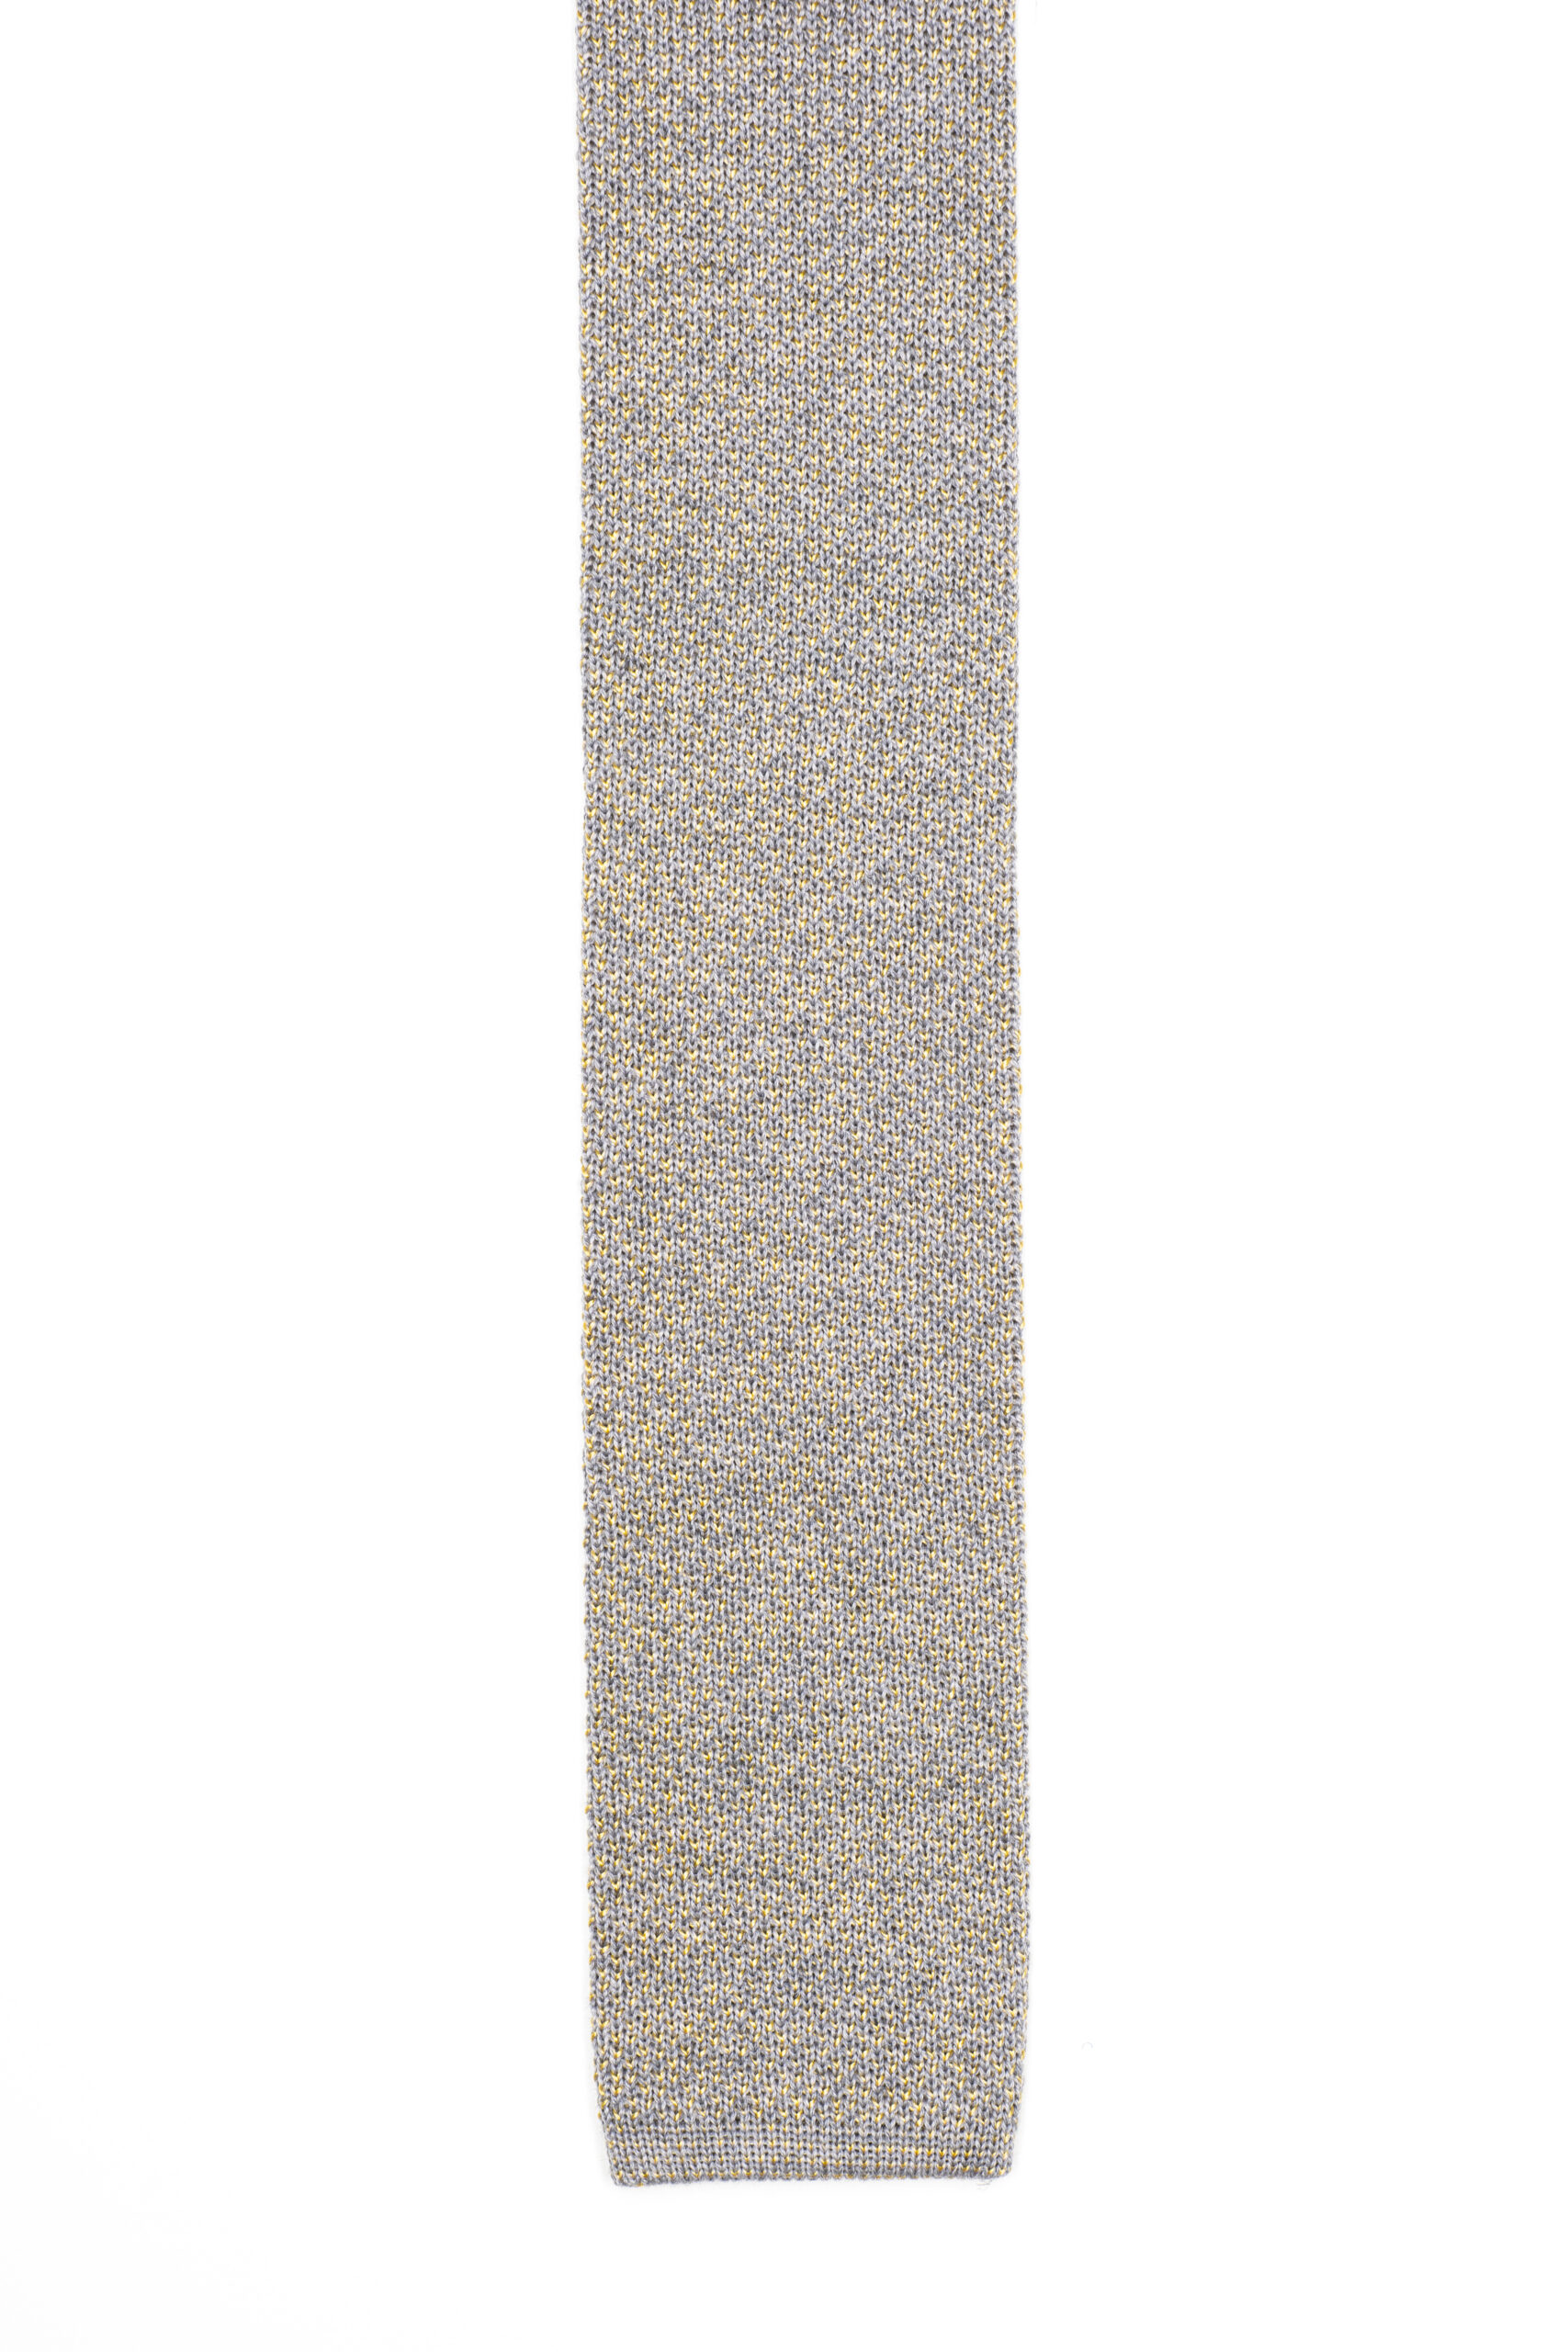 cravatta filo seta grigio beola giallo ginestra 1